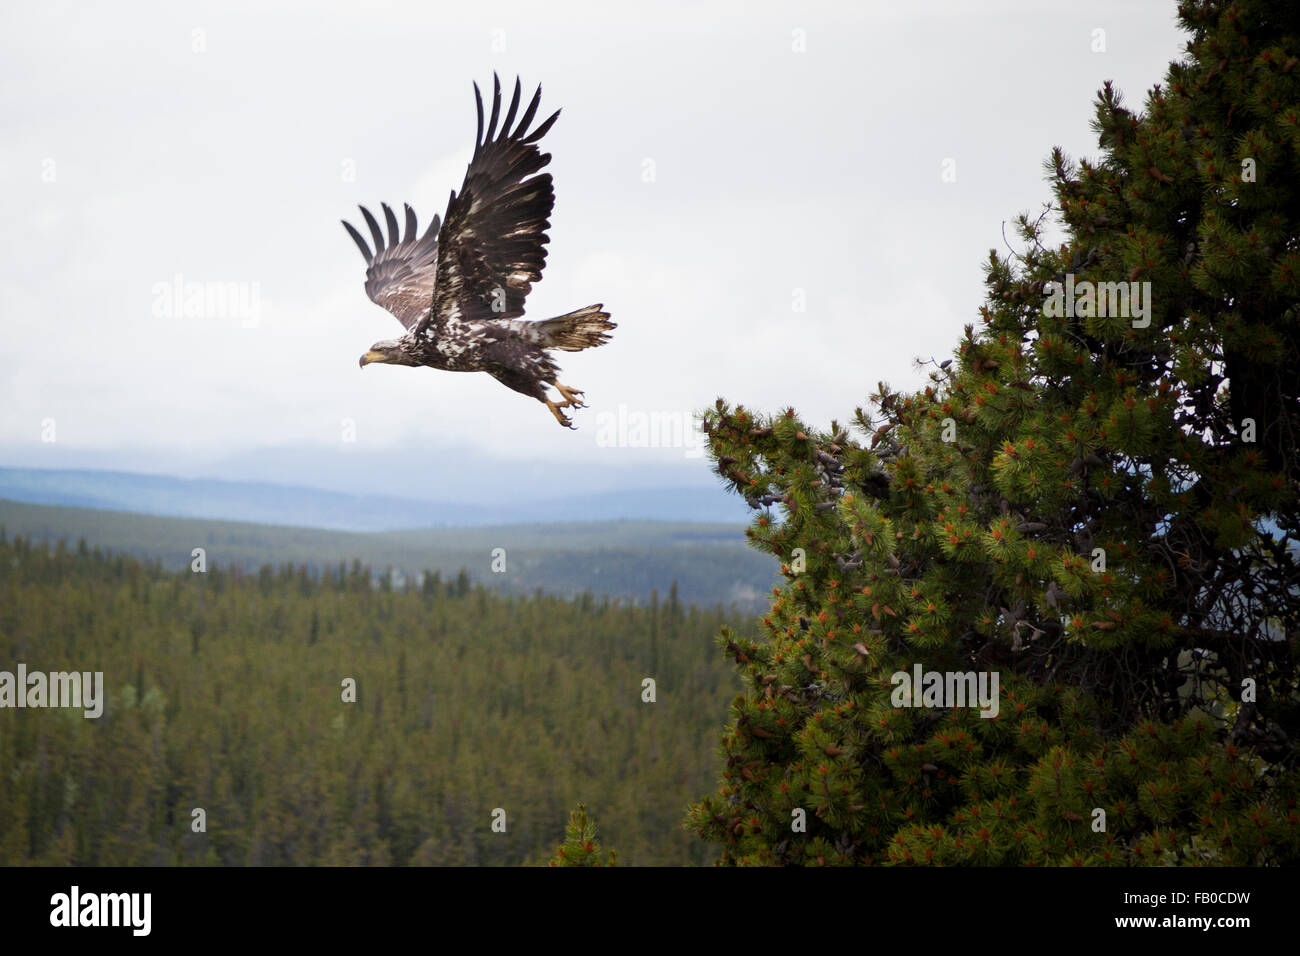 Eagle prendre vol au-dessus de la forêt boréale du Canada Territoire du Yukon Banque D'Images